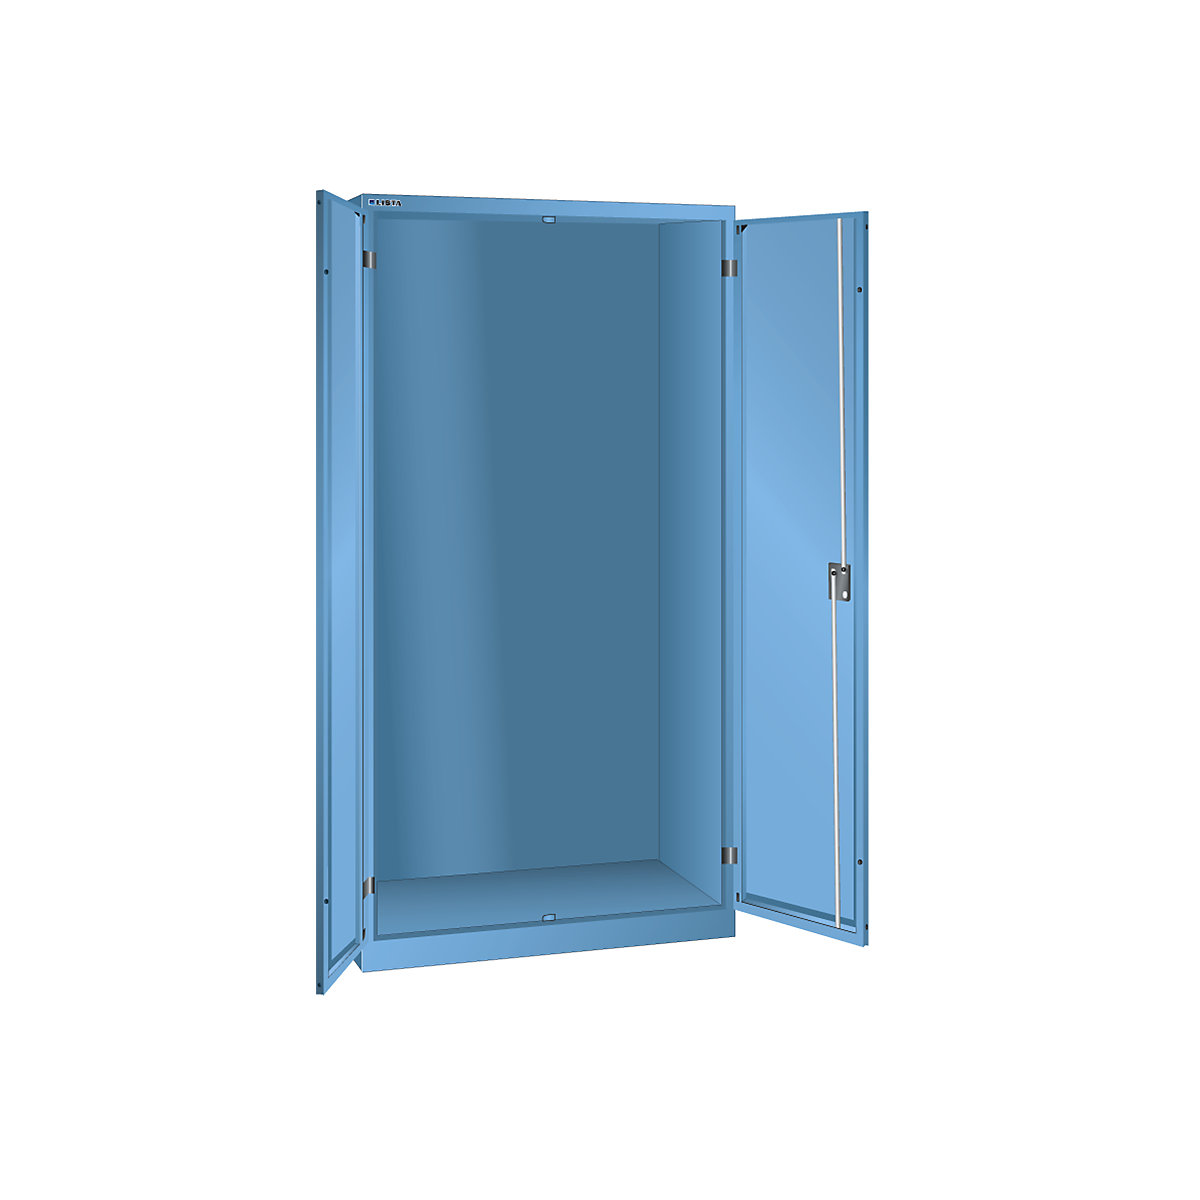 Armário de portas de batentes, AxLxP 1950 x 1000 x 580 mm – LISTA, corpo vazio, azul claro-9